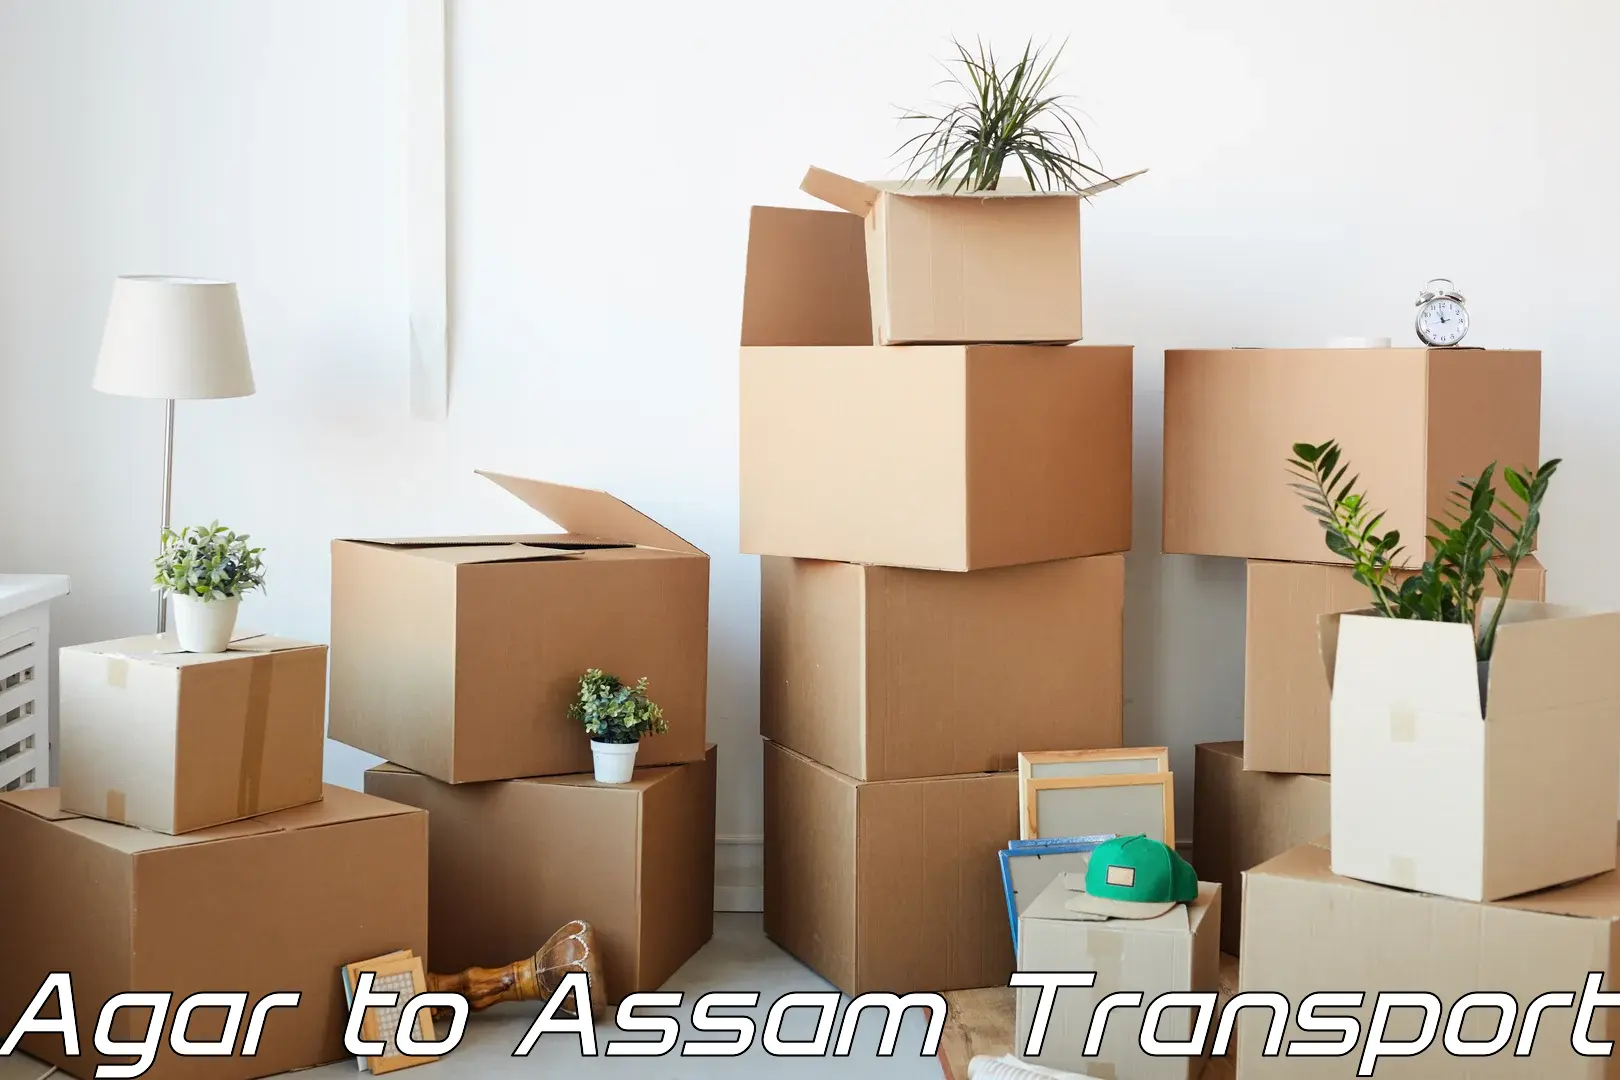 Intercity transport Agar to Assam